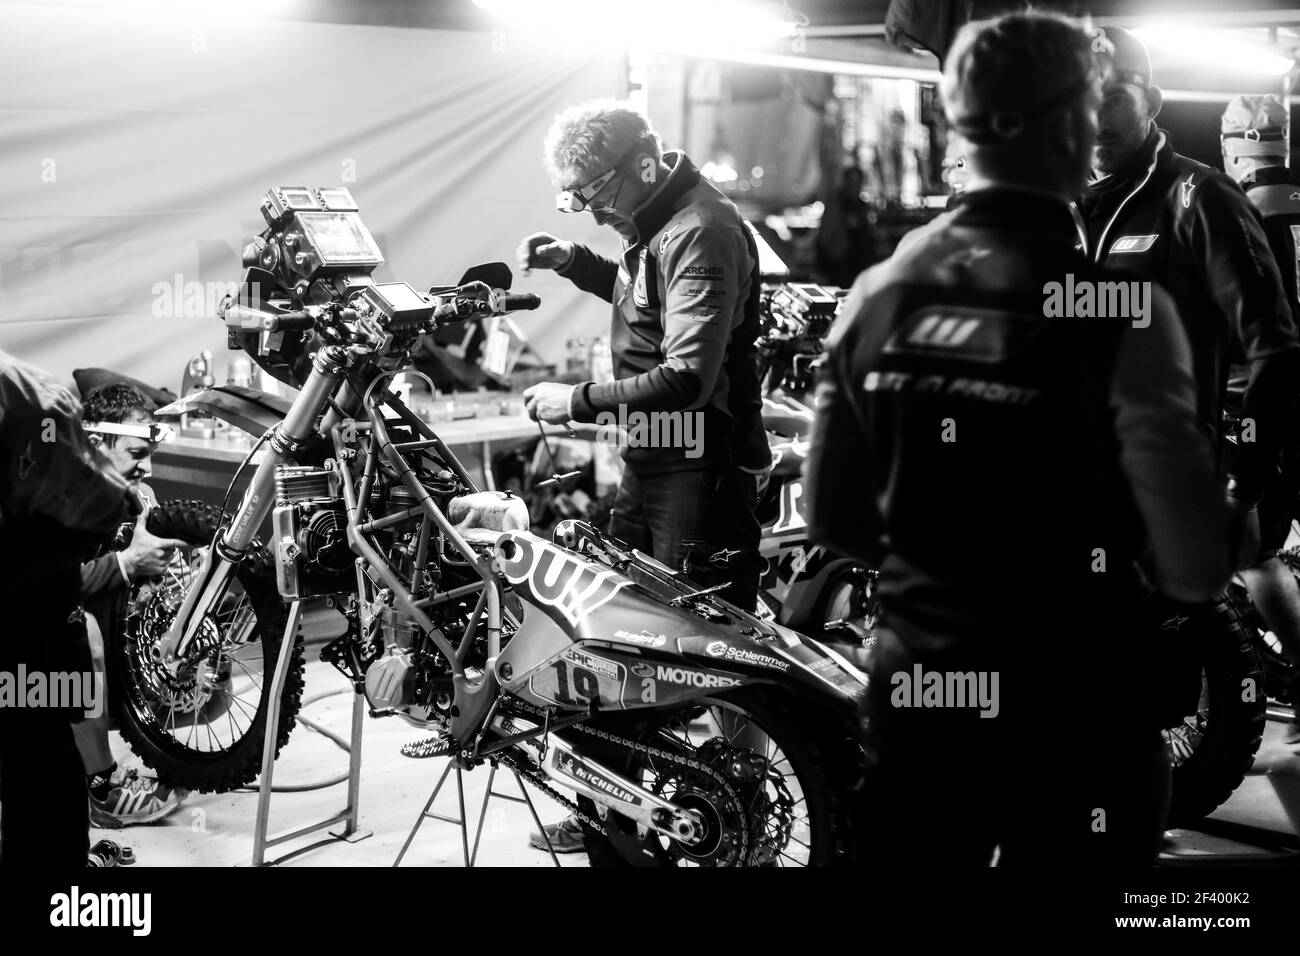 19 MEO ANTOINE (FRA), KTM, moto, travaillant tard sur bivouac, pendant le Dakar 2018, étape 5 San Juan de Marcona à Arequipa, Pérou, janvier 10, Pérou, janvier 9 - photo Florent Gooden / DPPI Banque D'Images